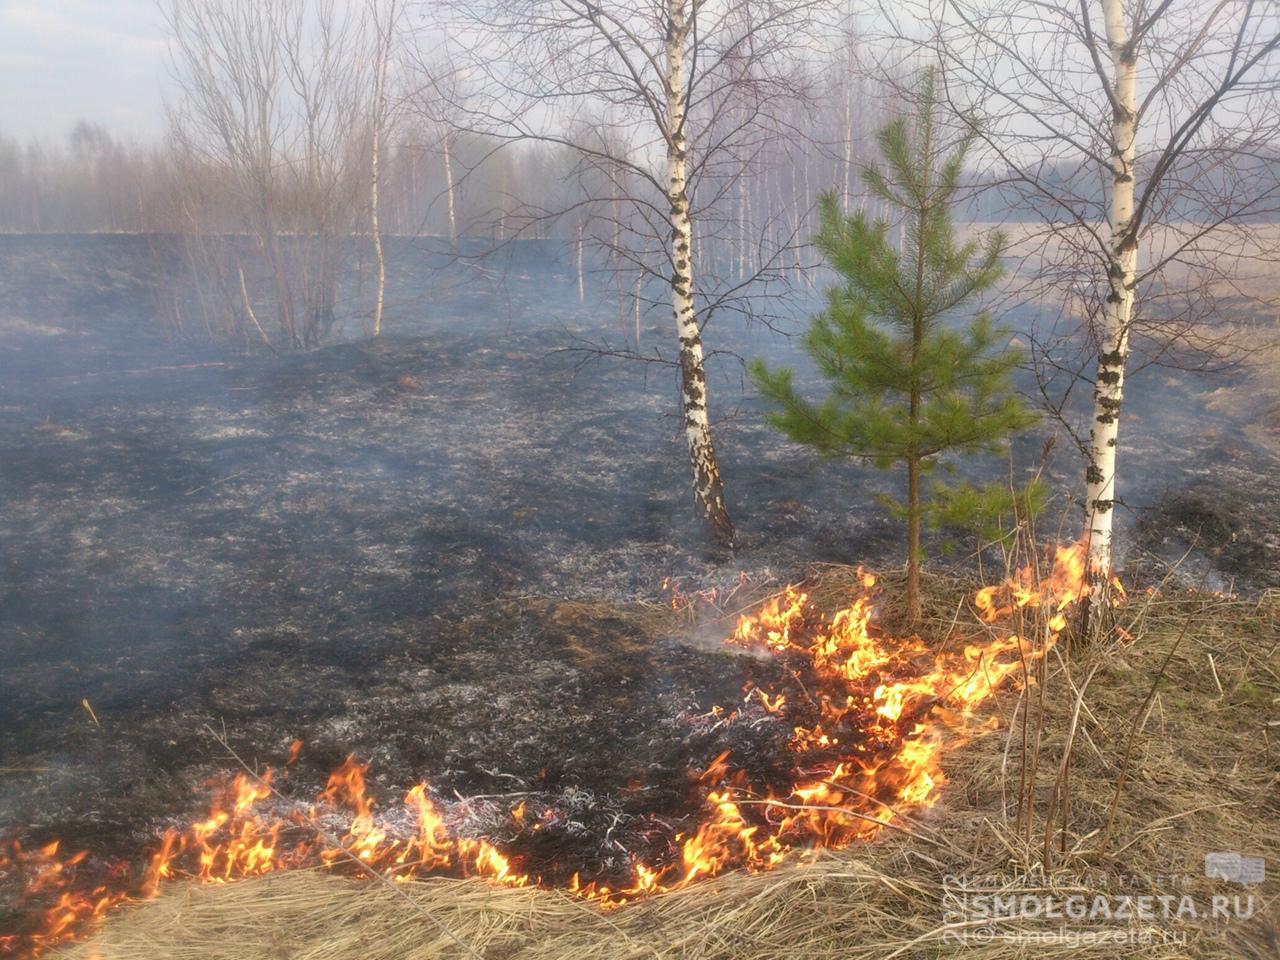 1186 палов травы зафиксировали в Смоленской области с начала года